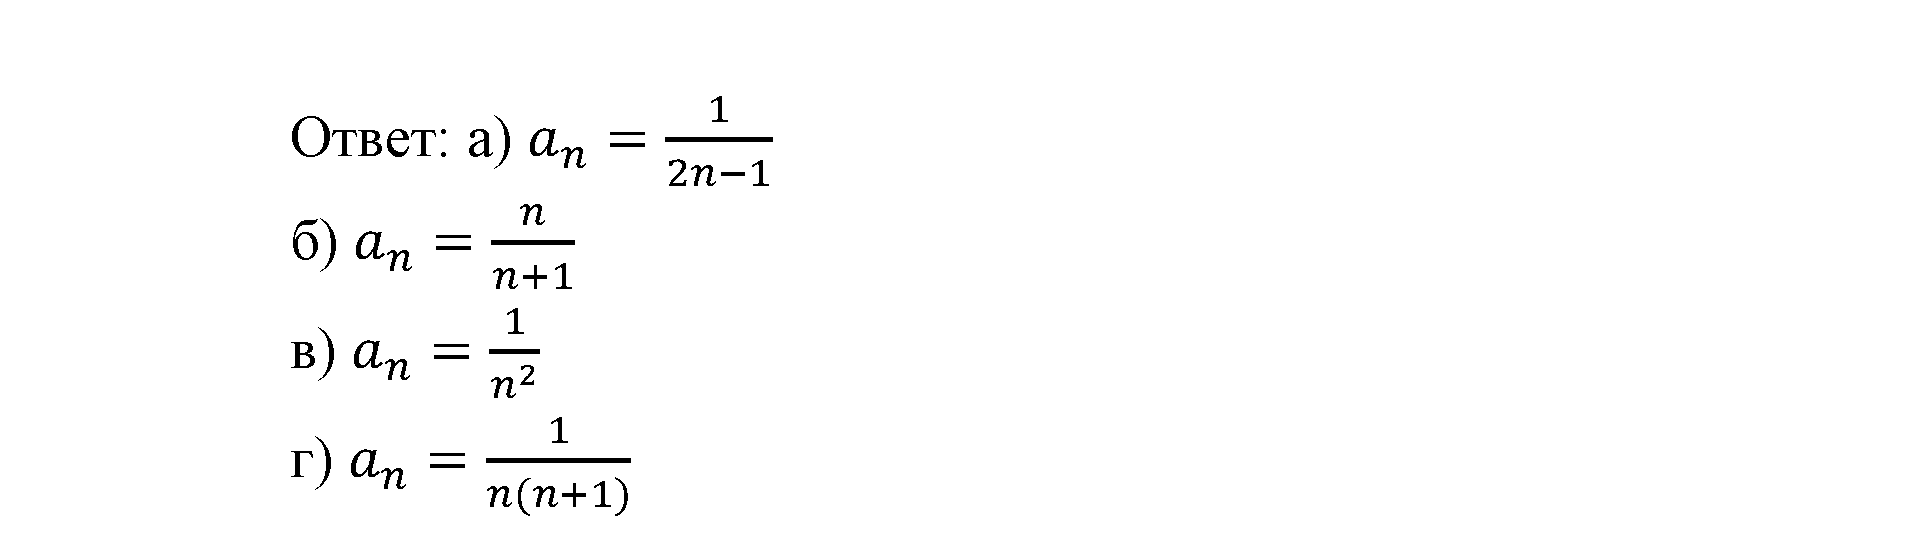 страница 96 задача 15.28 алгебра 9 класс Мордкович 2010 год